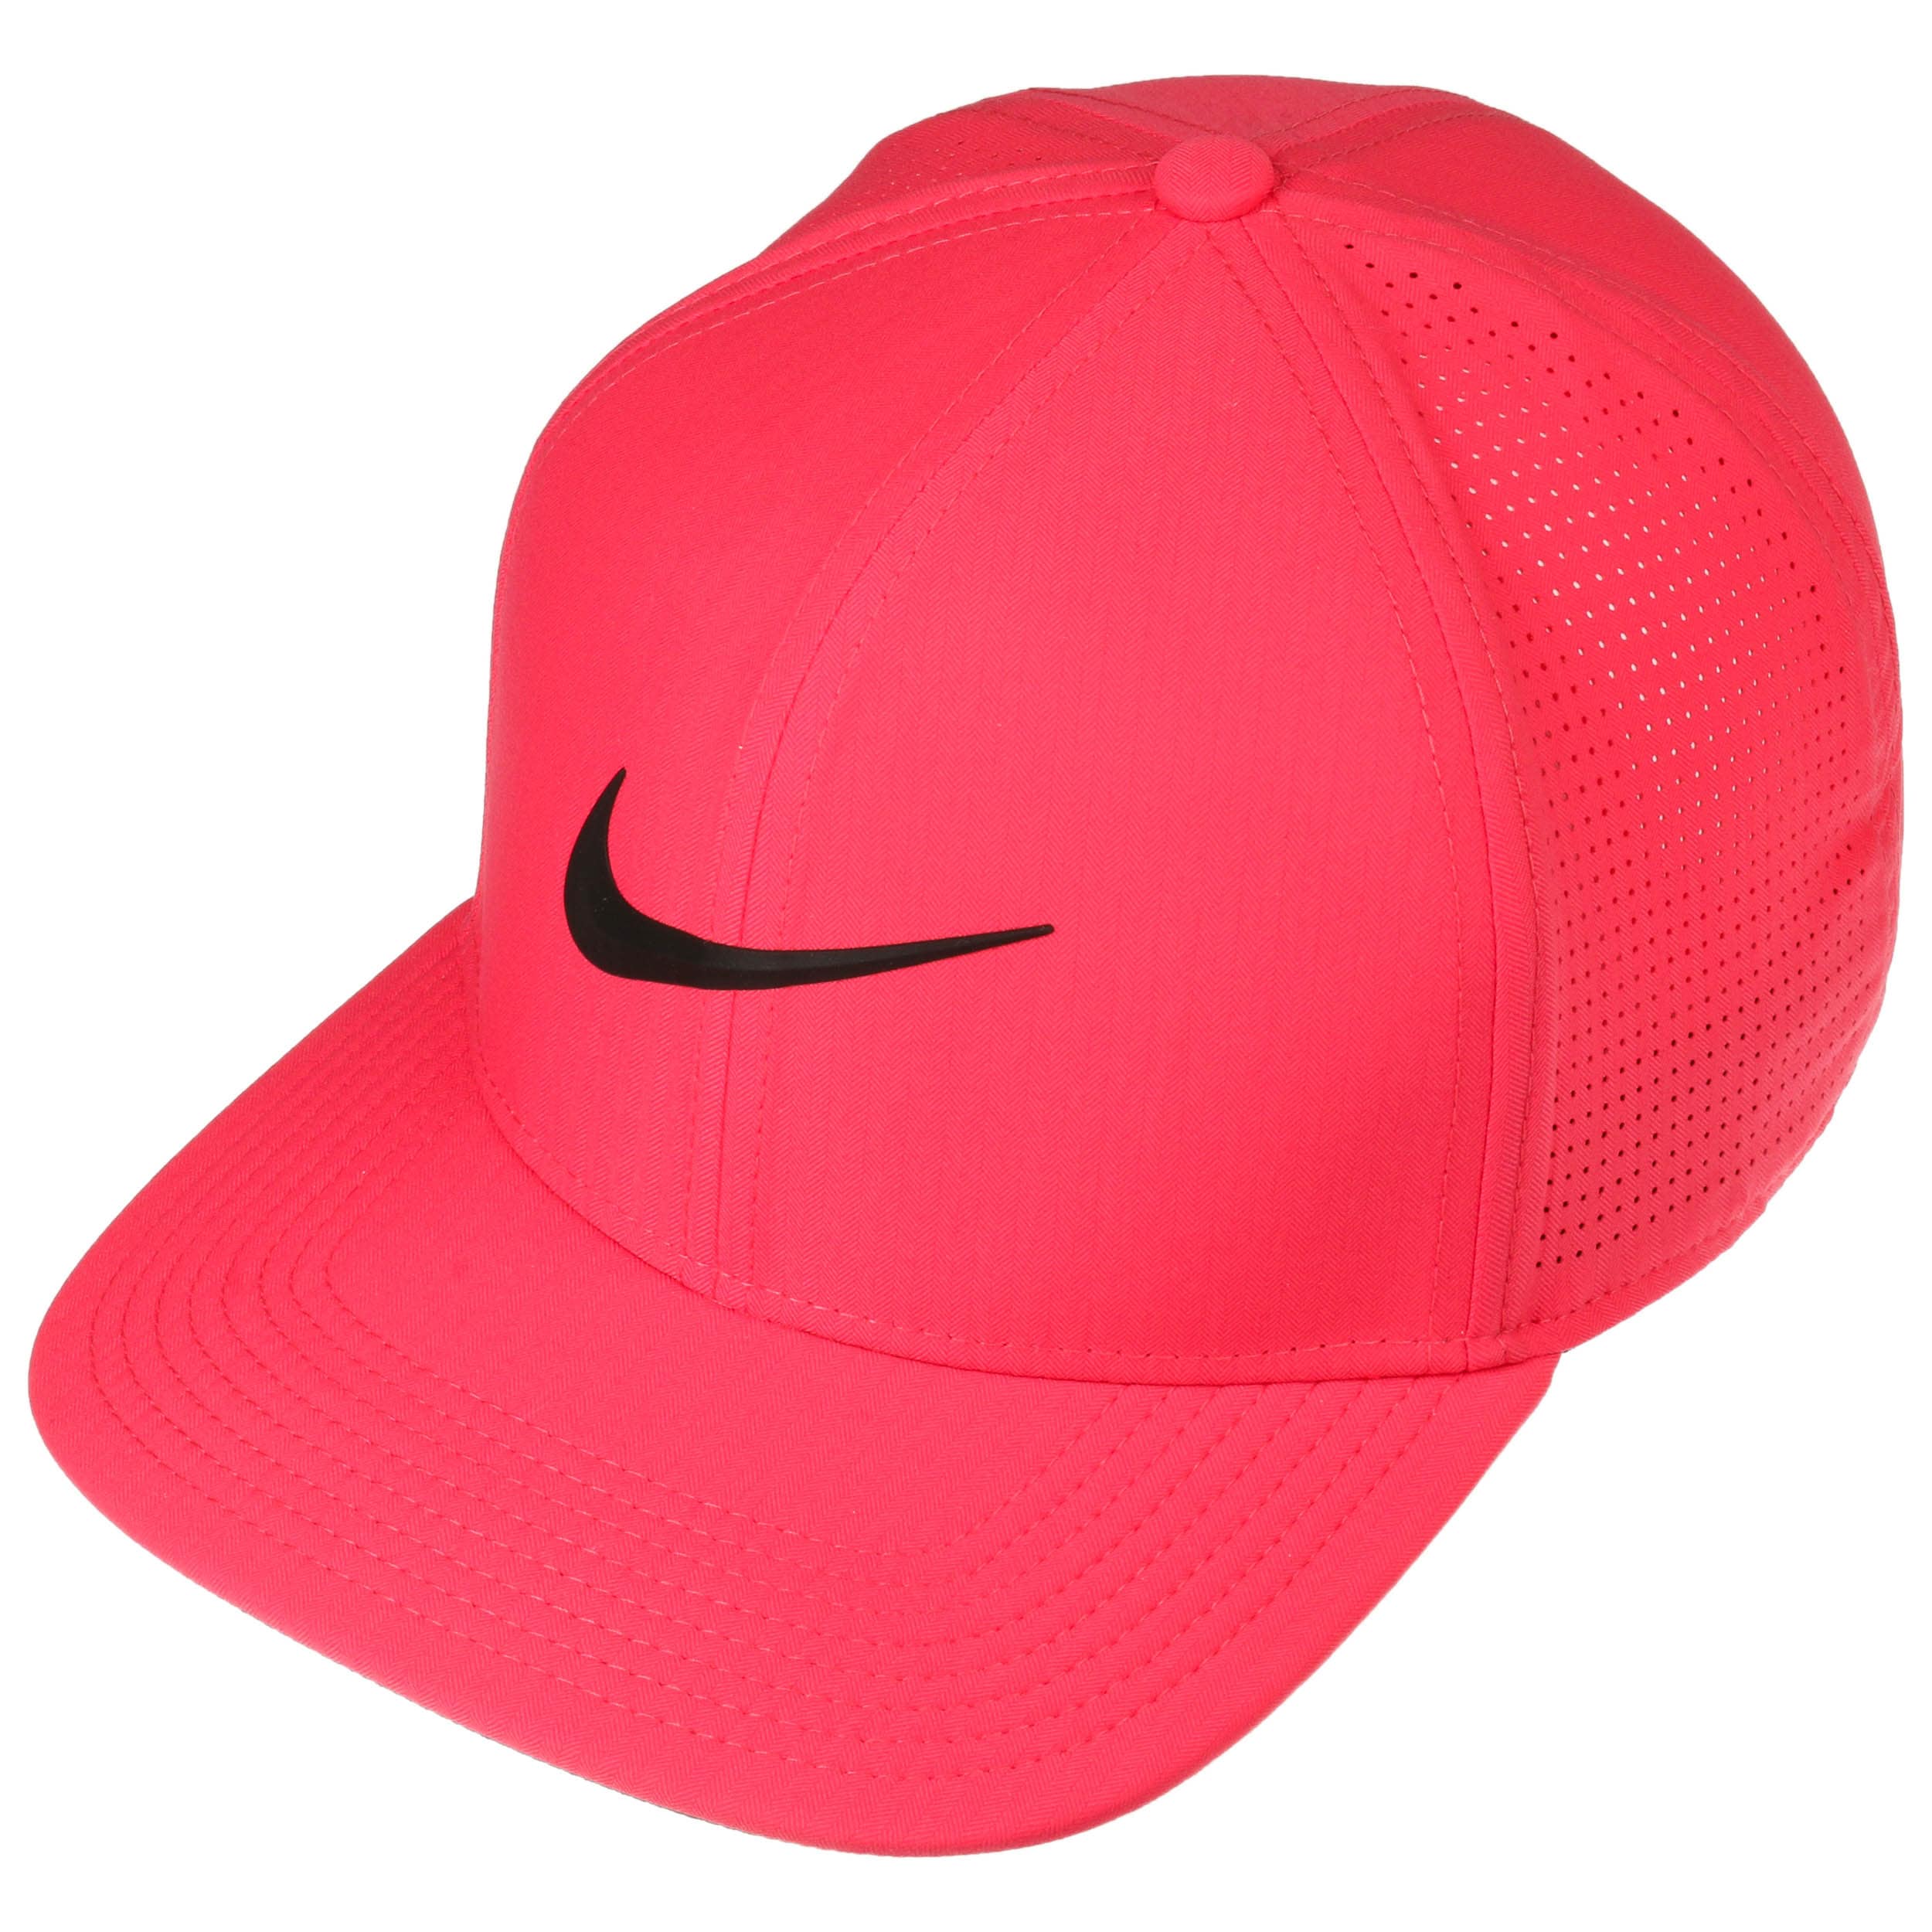 Aerobill Golf Cap by Nike - 35,95